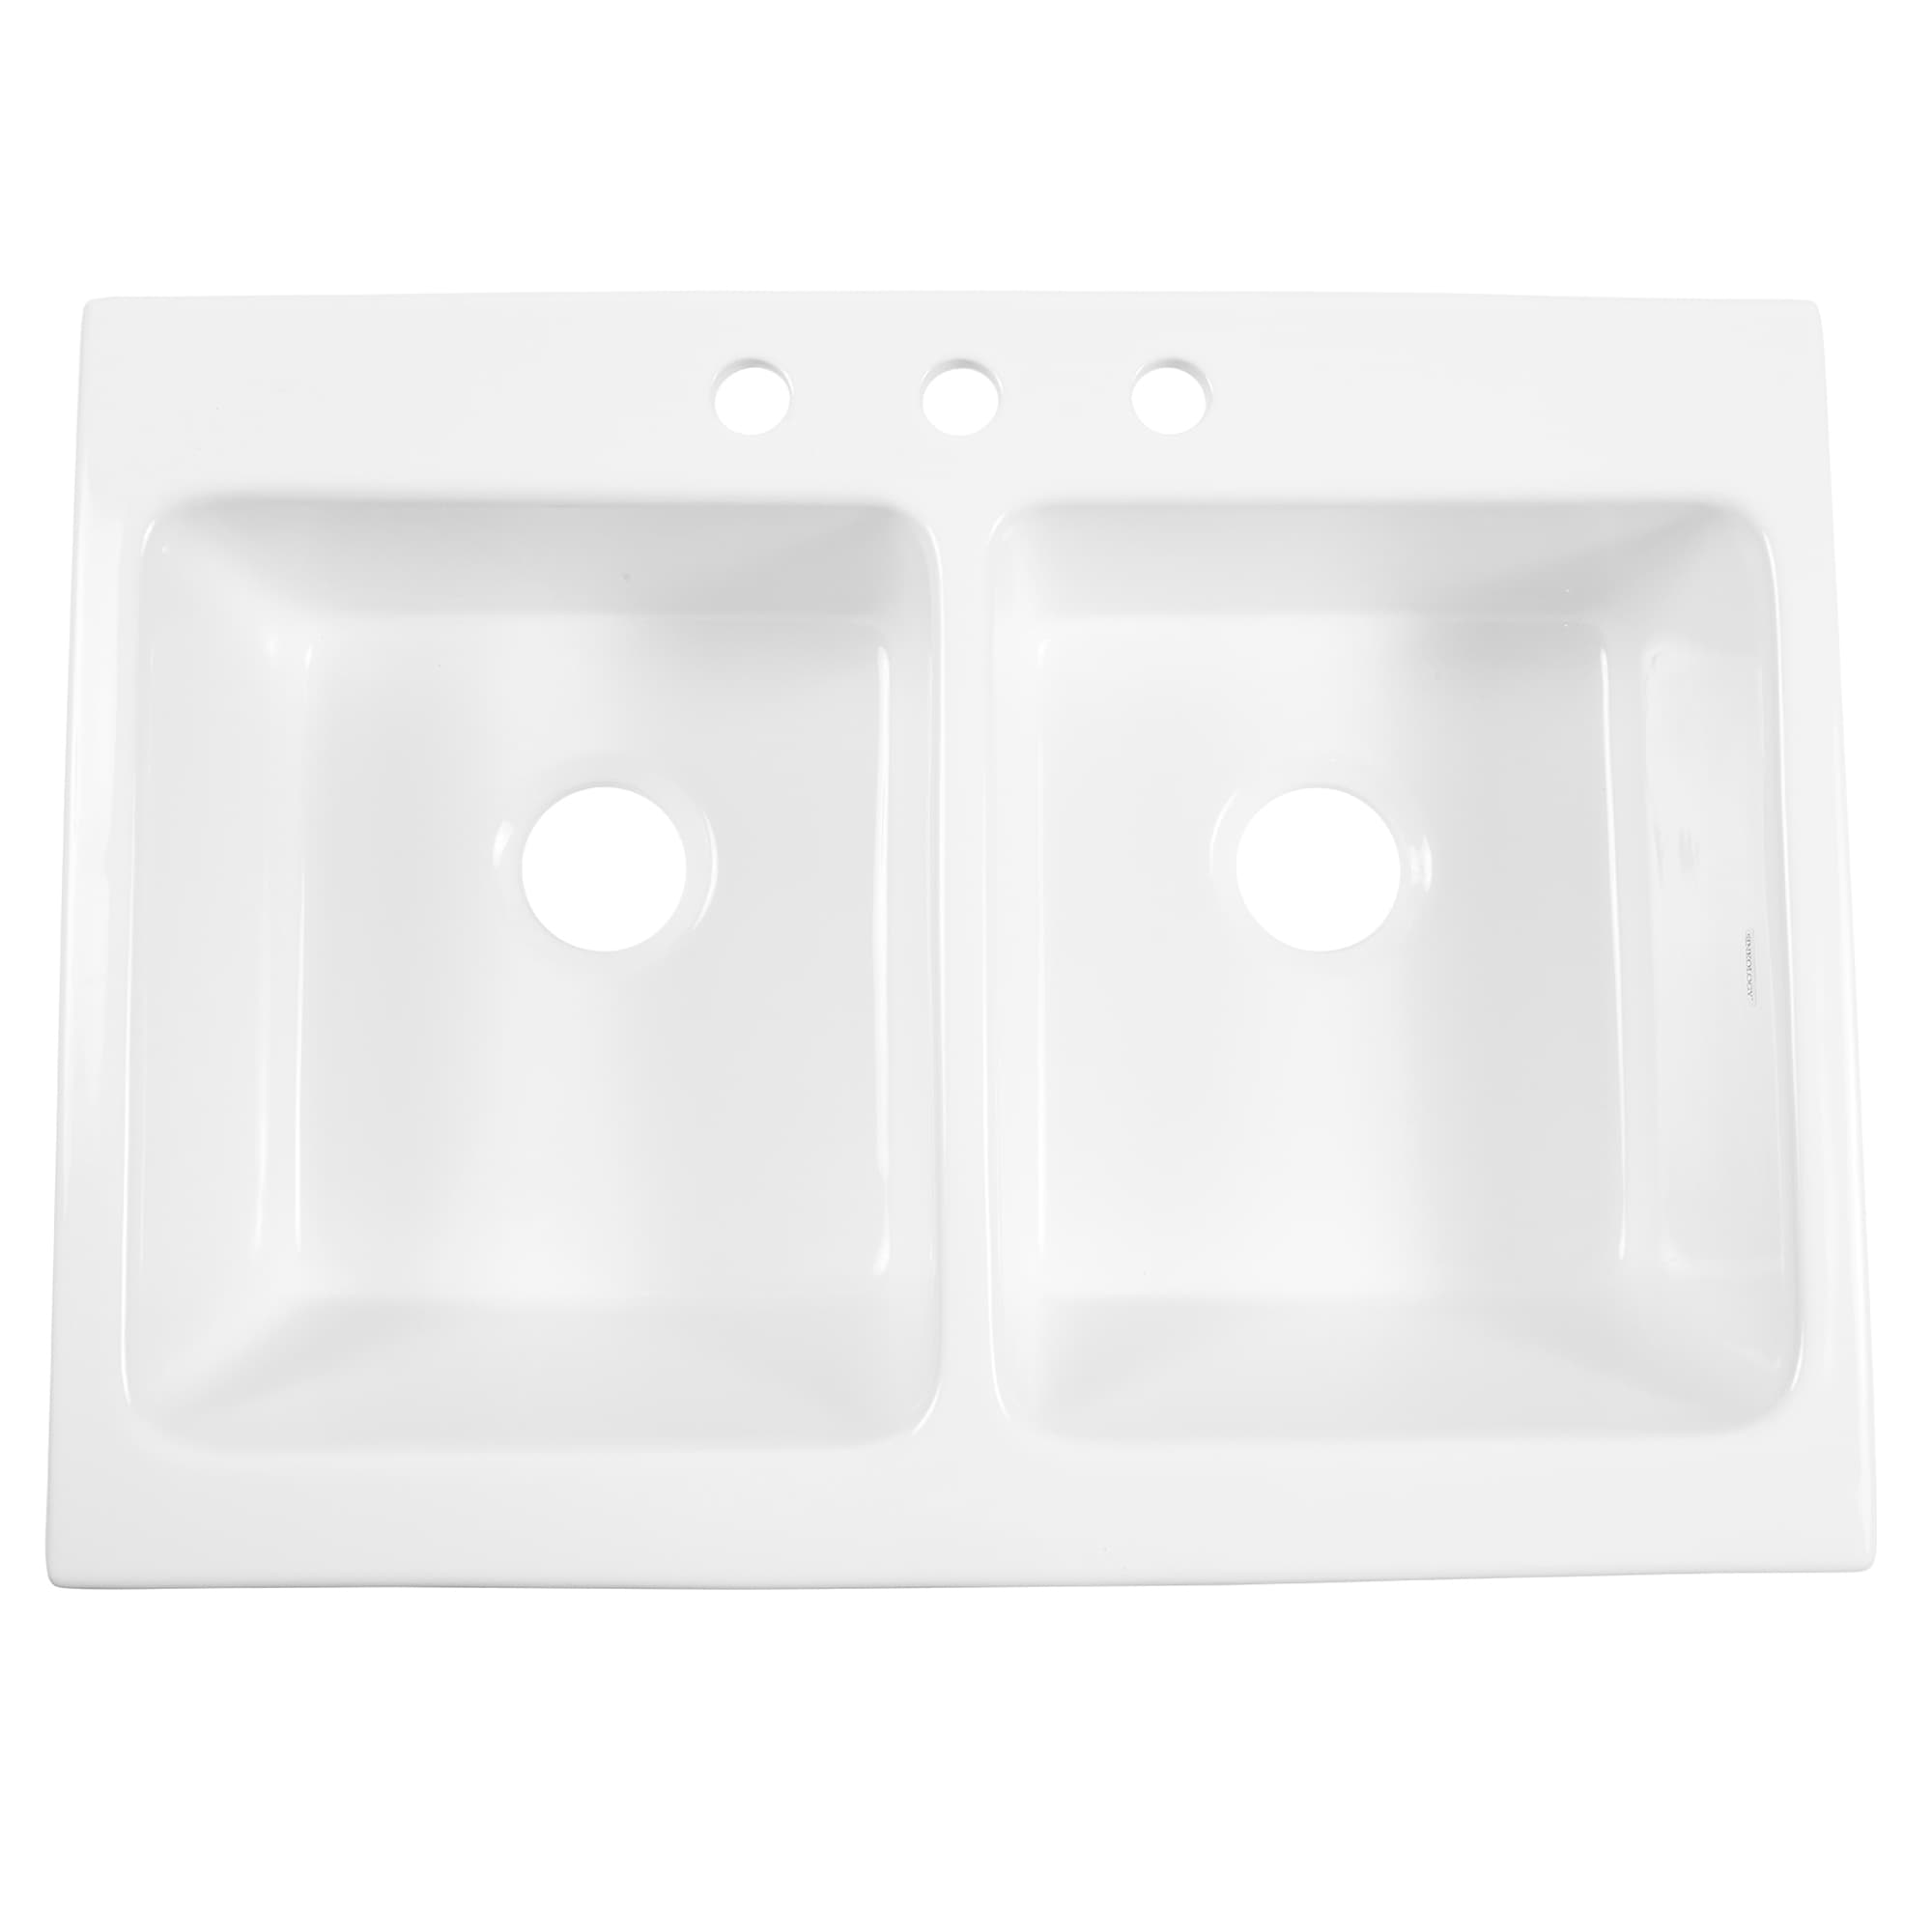  Tolco Heavy-Duty Plastic Scoop, 3 Quart, White : Home & Kitchen